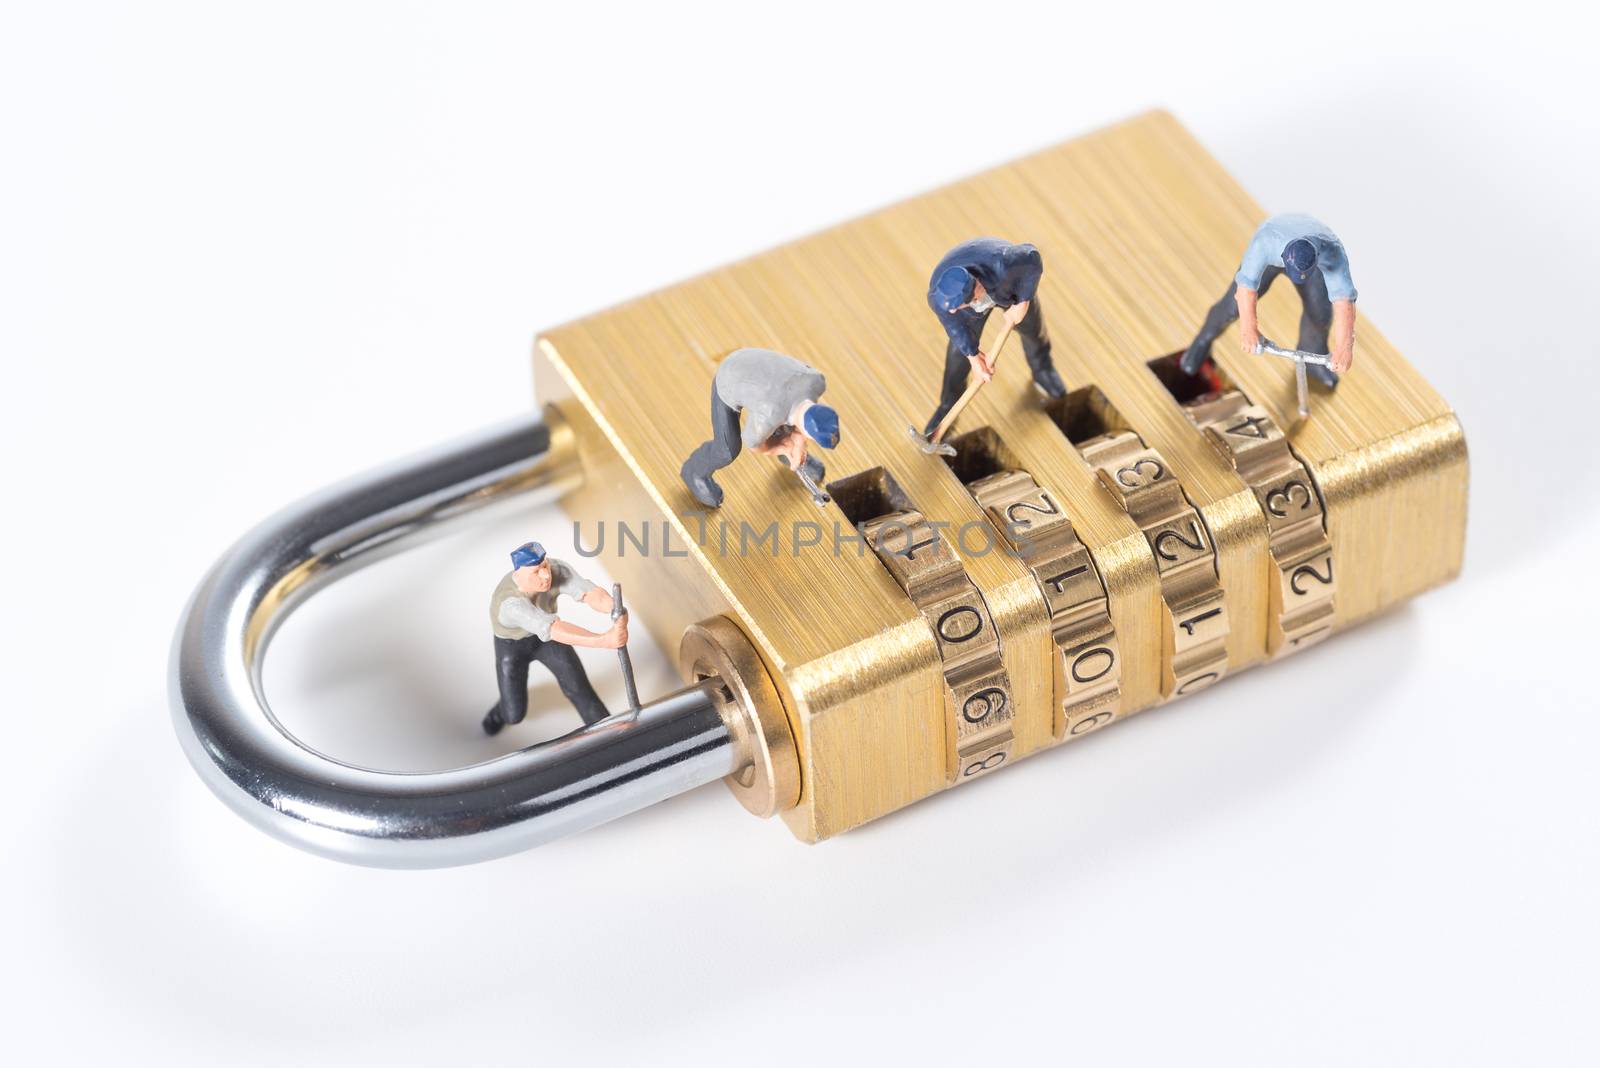 miniature people try to unlock metal security lock key